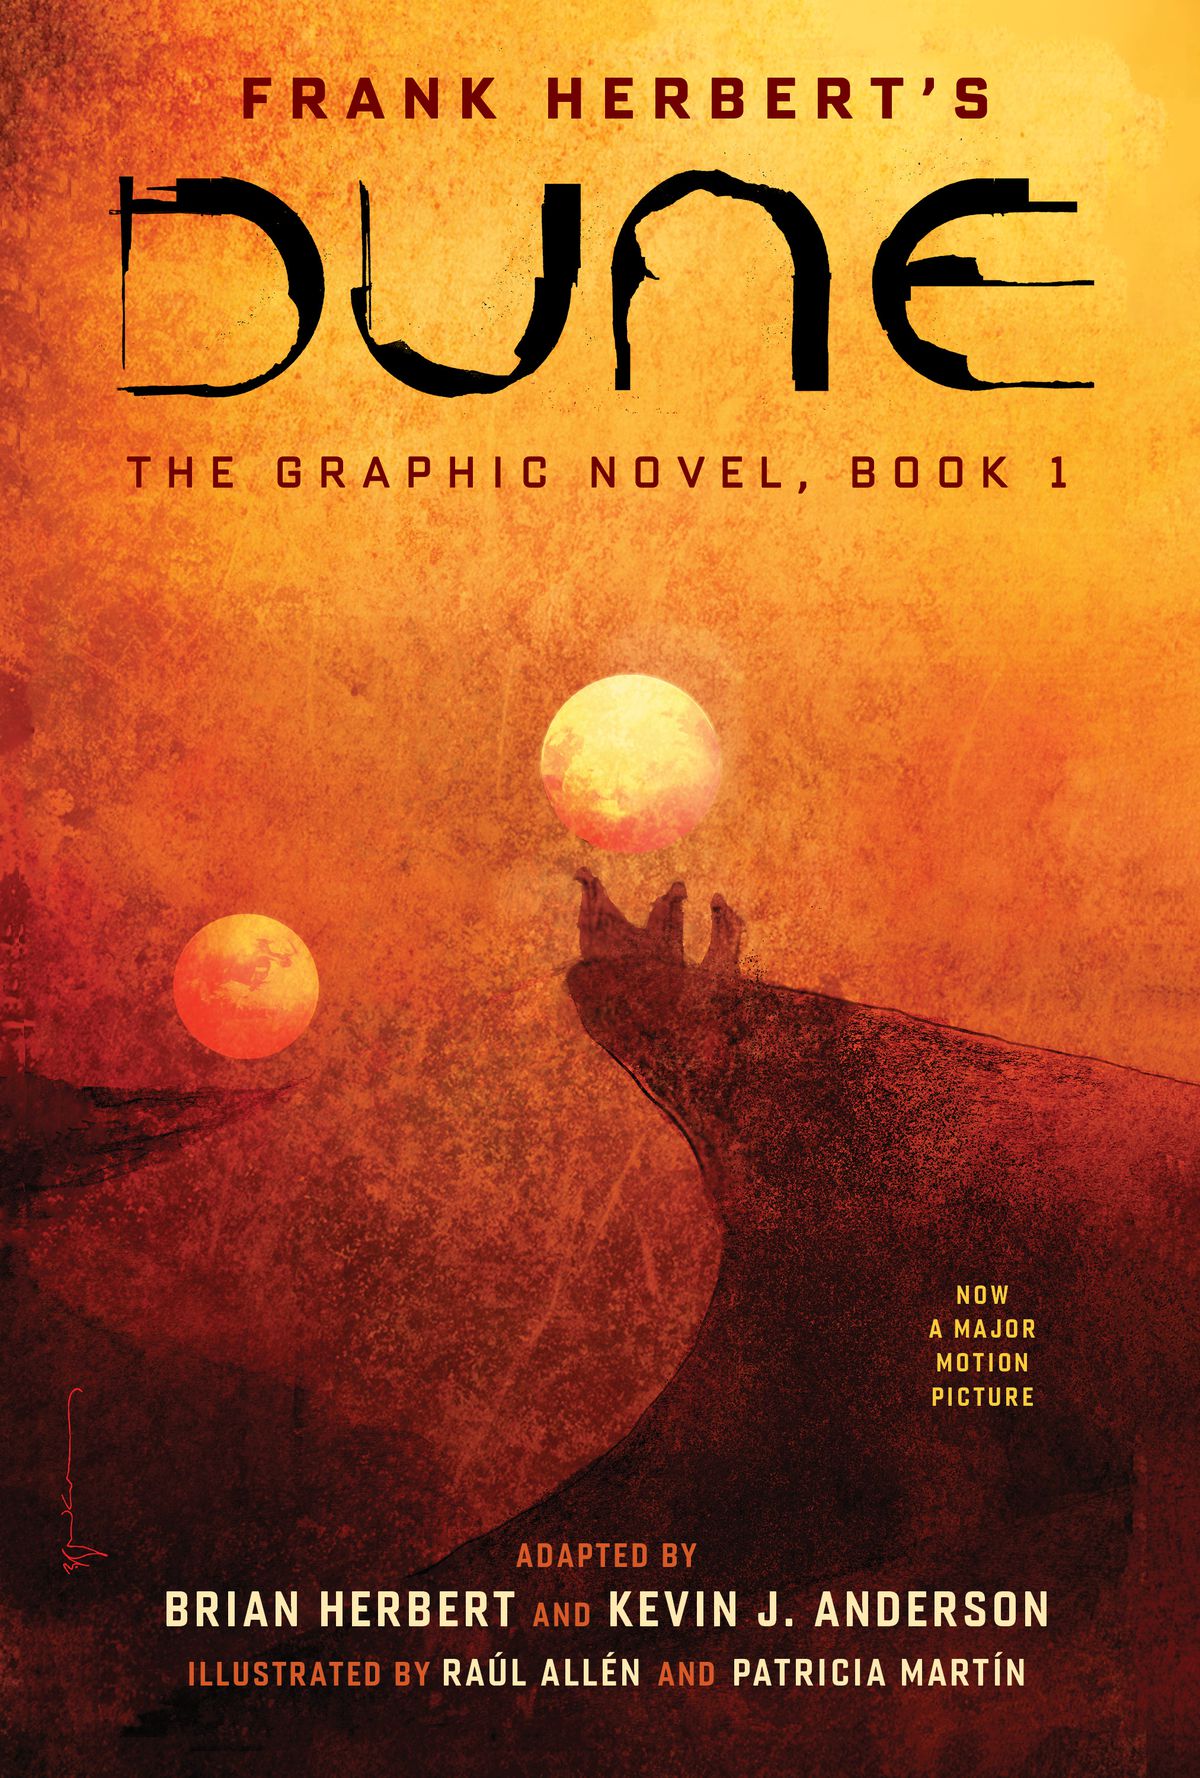 Copertina e testo di Dune: The Graphic Novel, Book 1